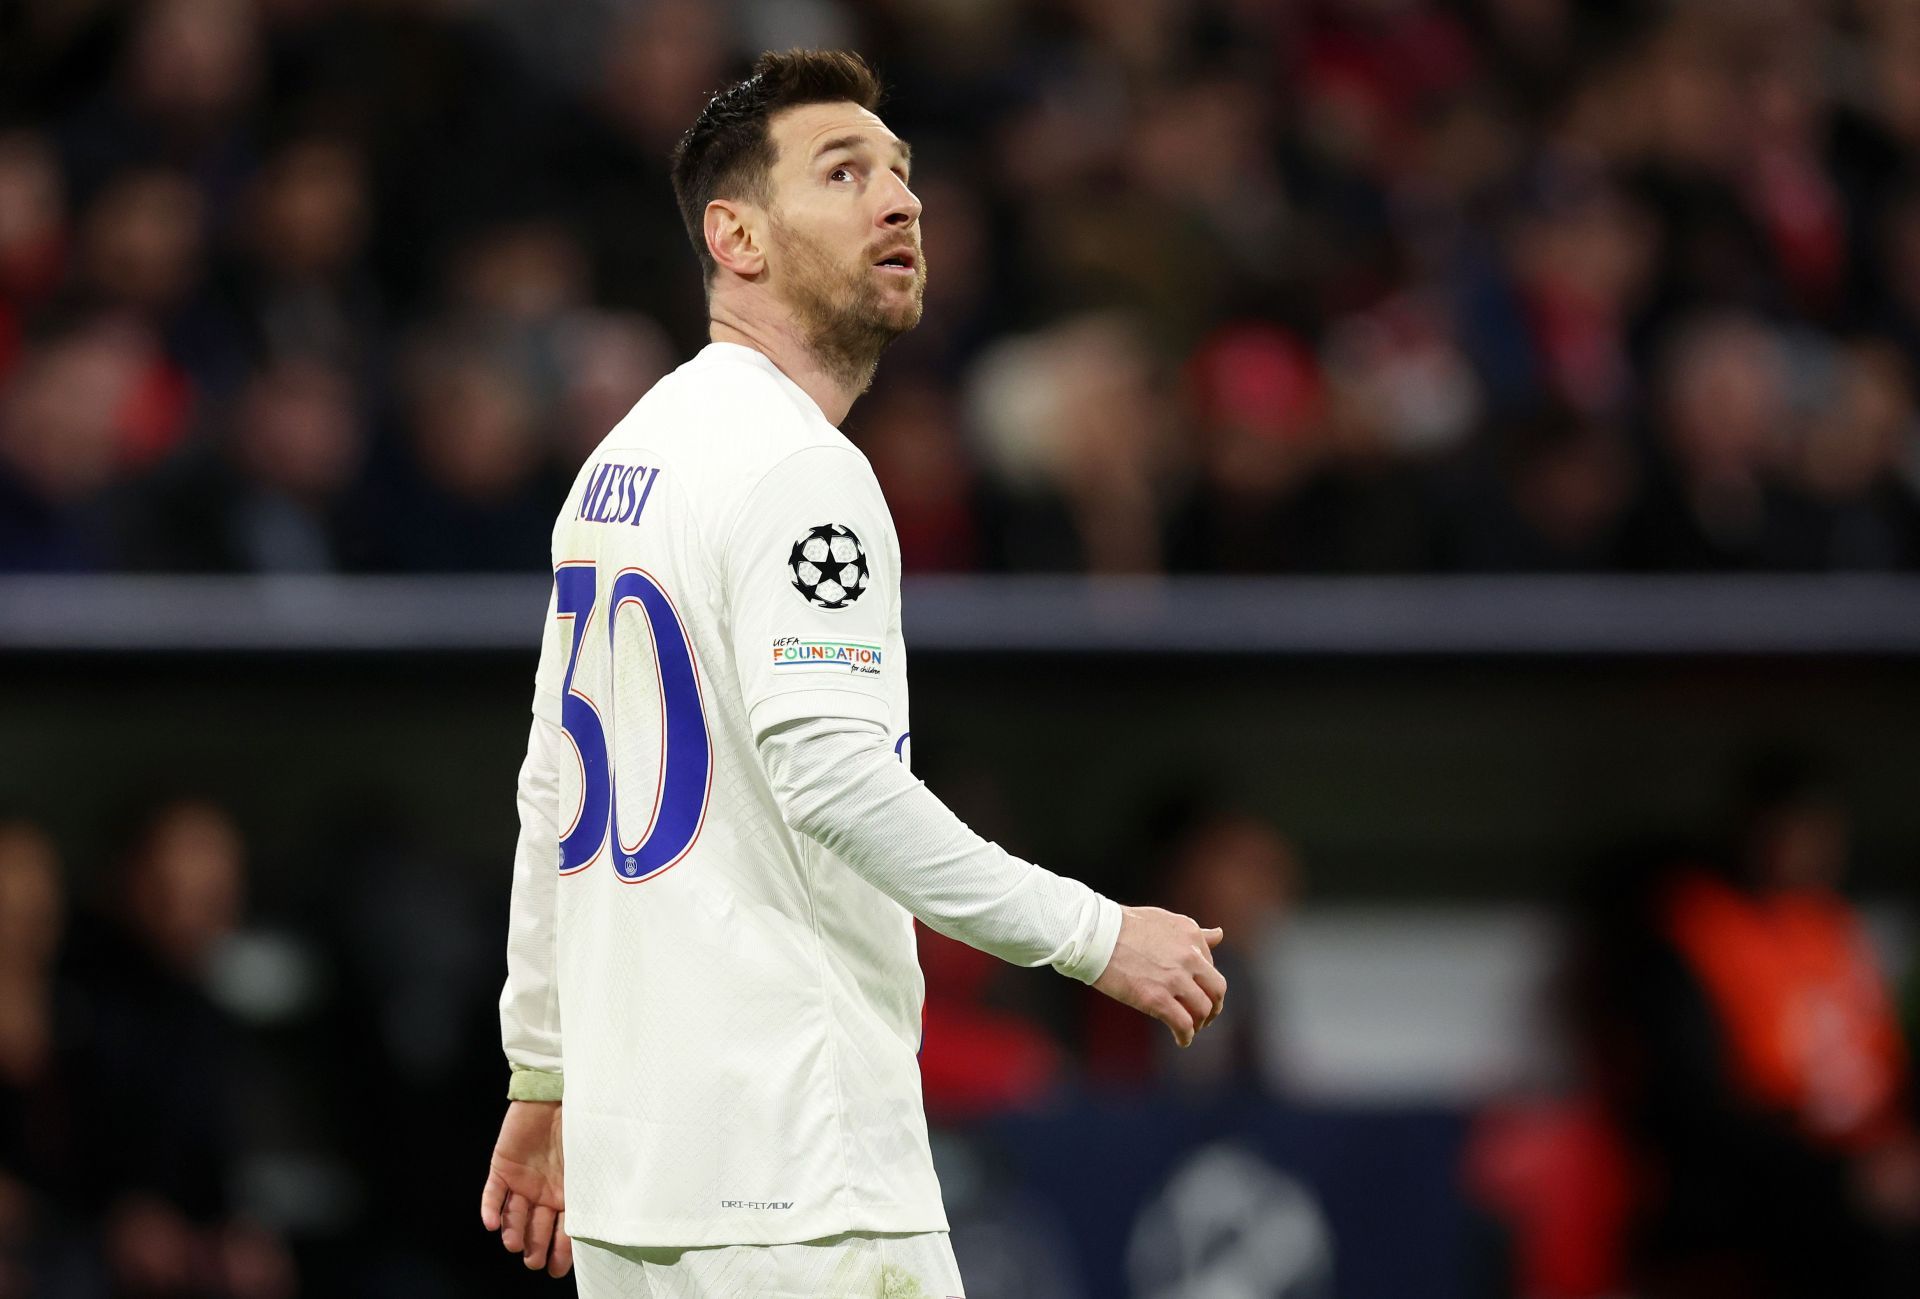 Lionel Messi was given a hostile reception at the Parc des Princes.